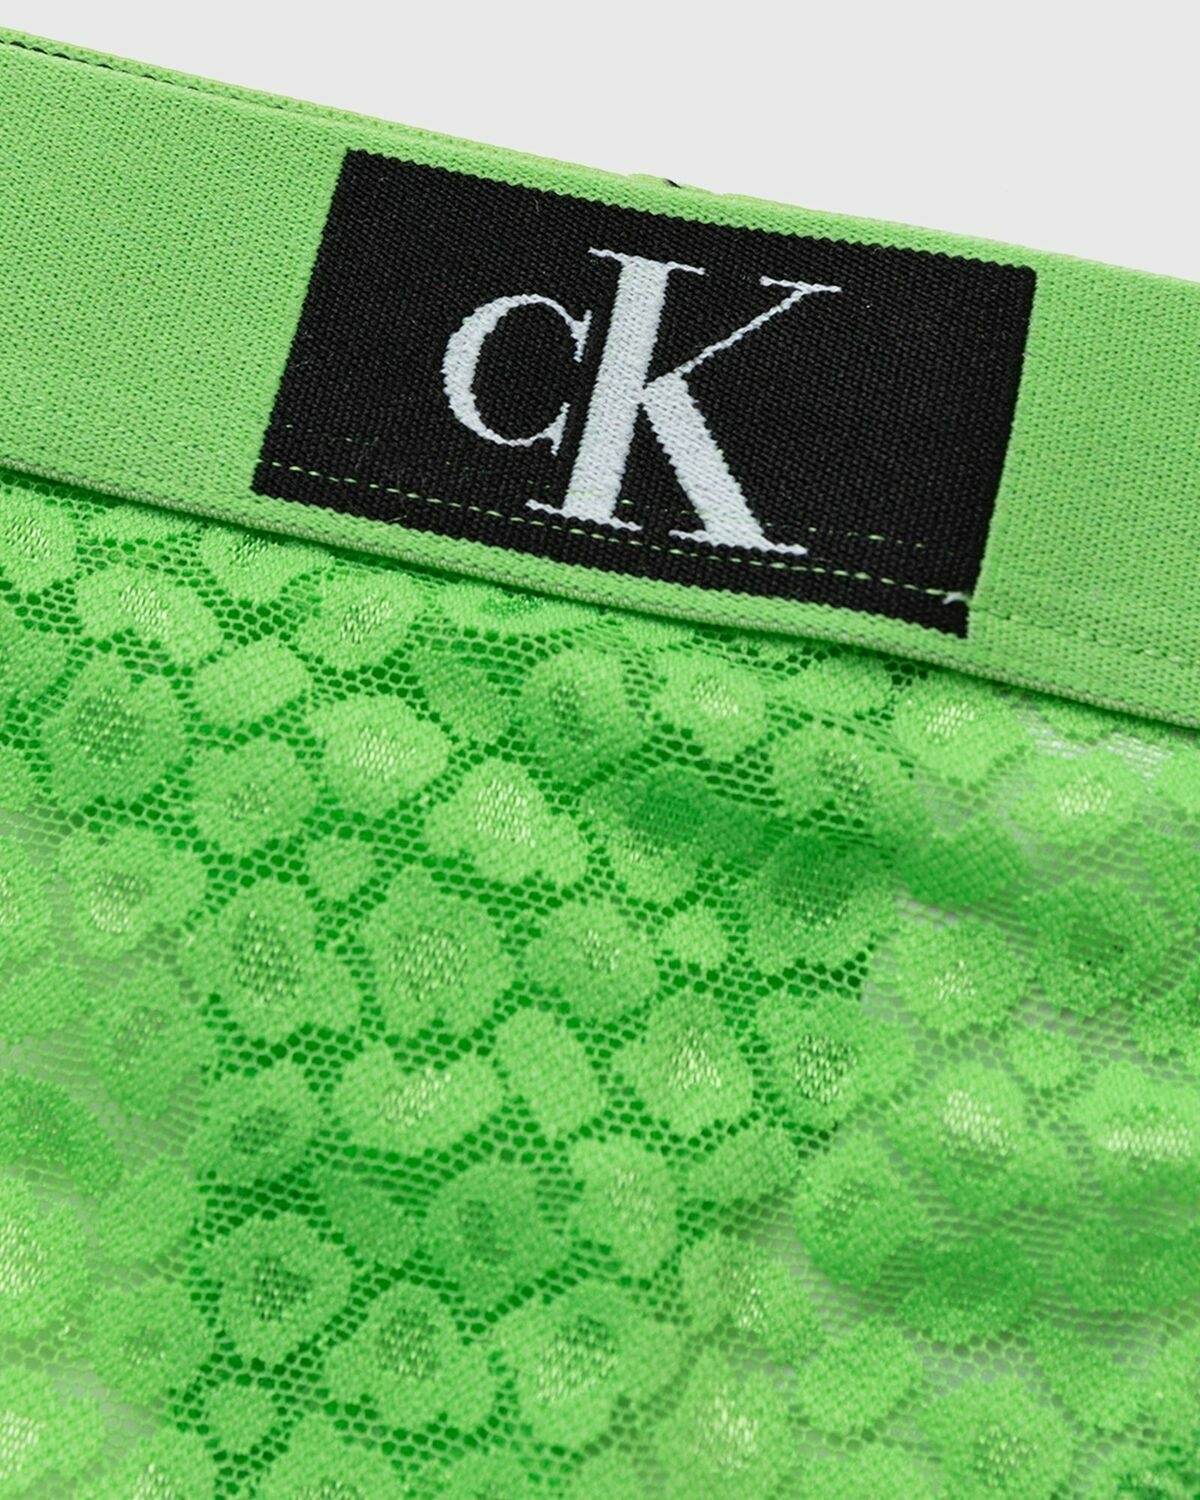 Calvin Klein Underwear WMNS THONG Green